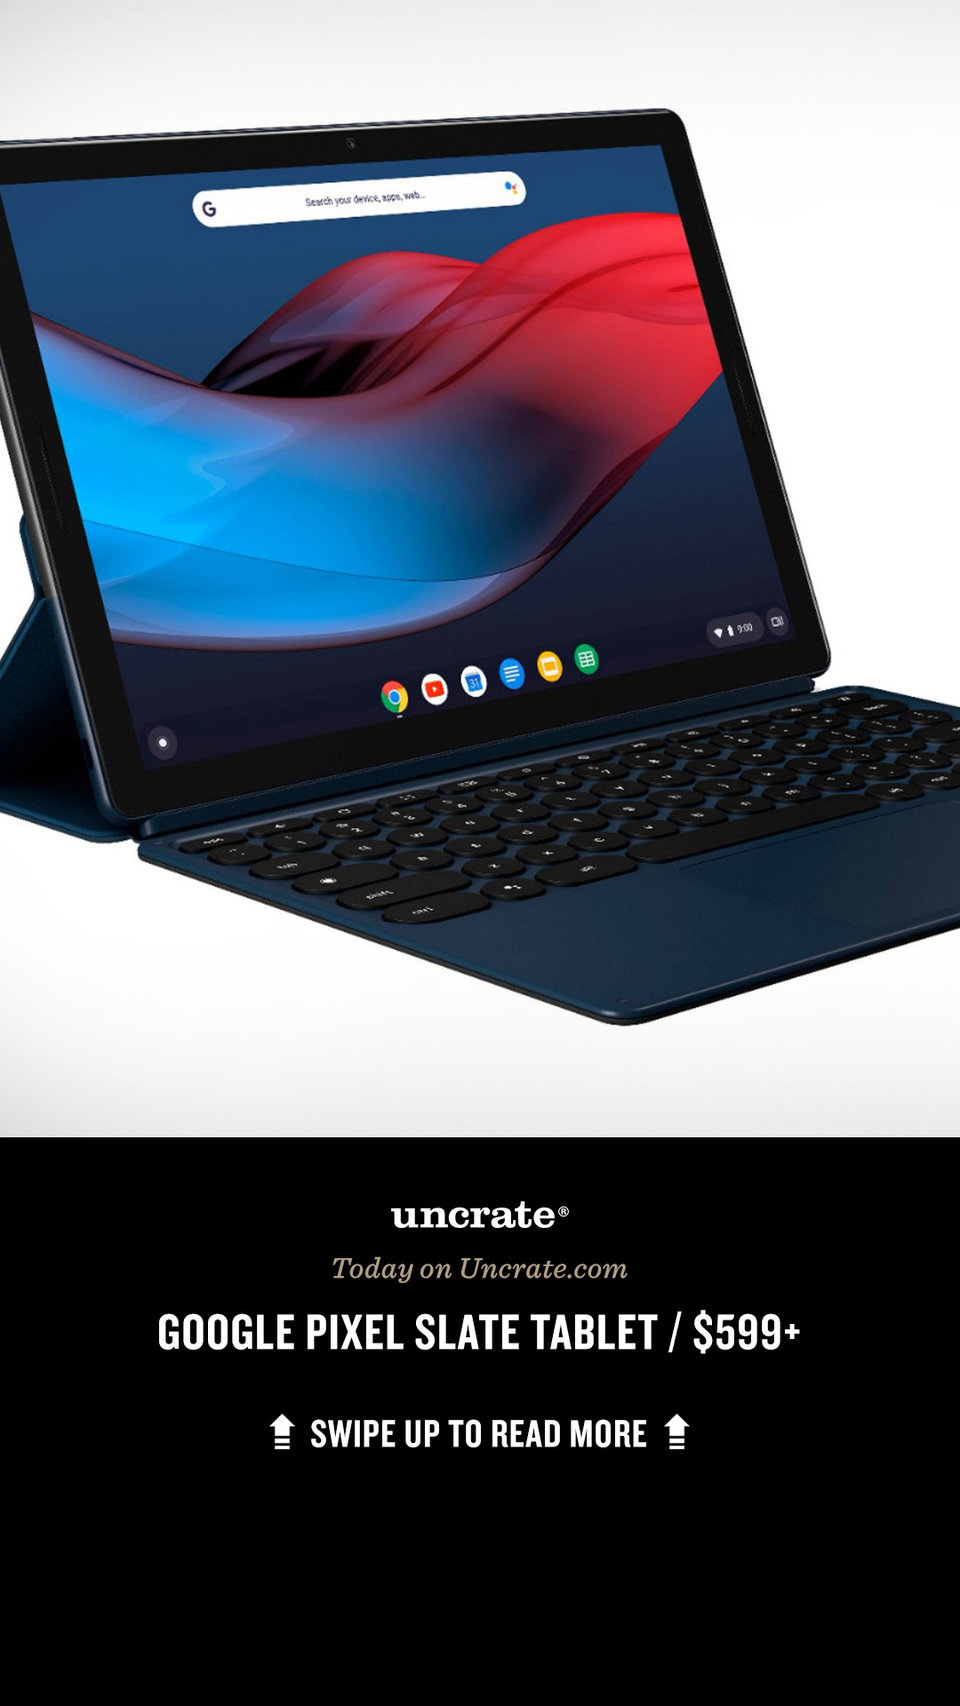 La Tablette Pixel Slate de Google